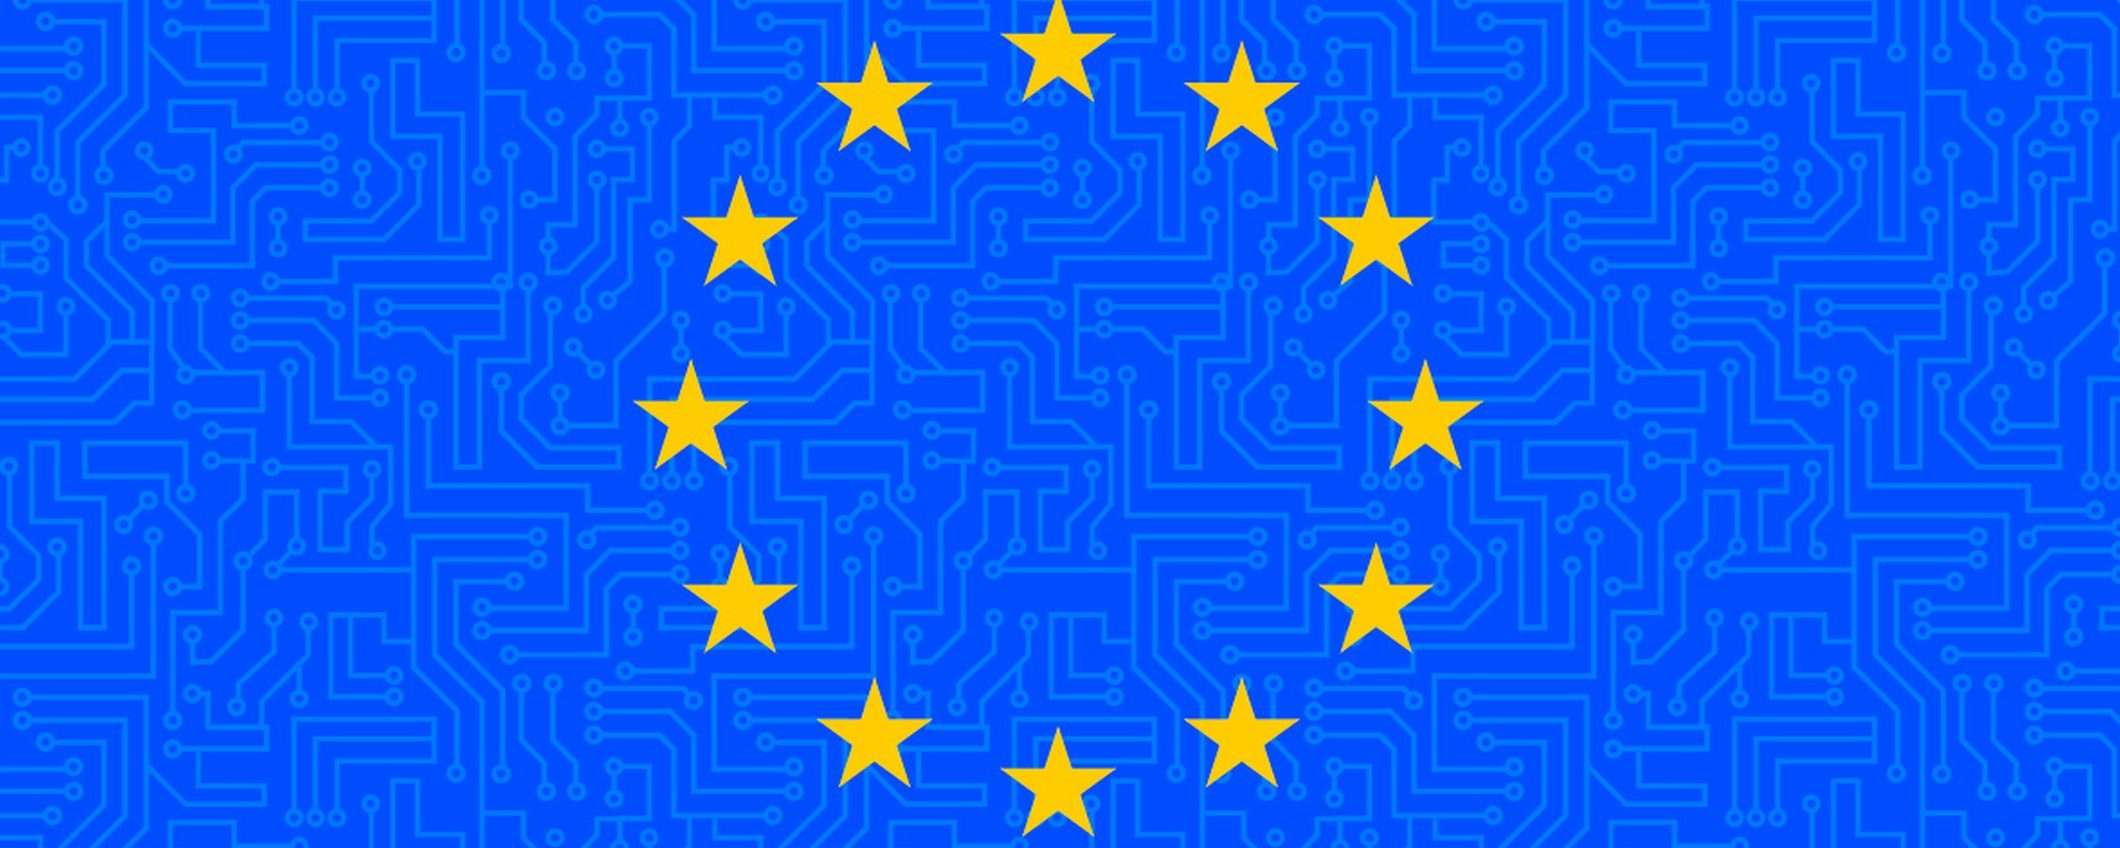 Euro digitale, la BCE cerca partner privati per la fase esplorativa